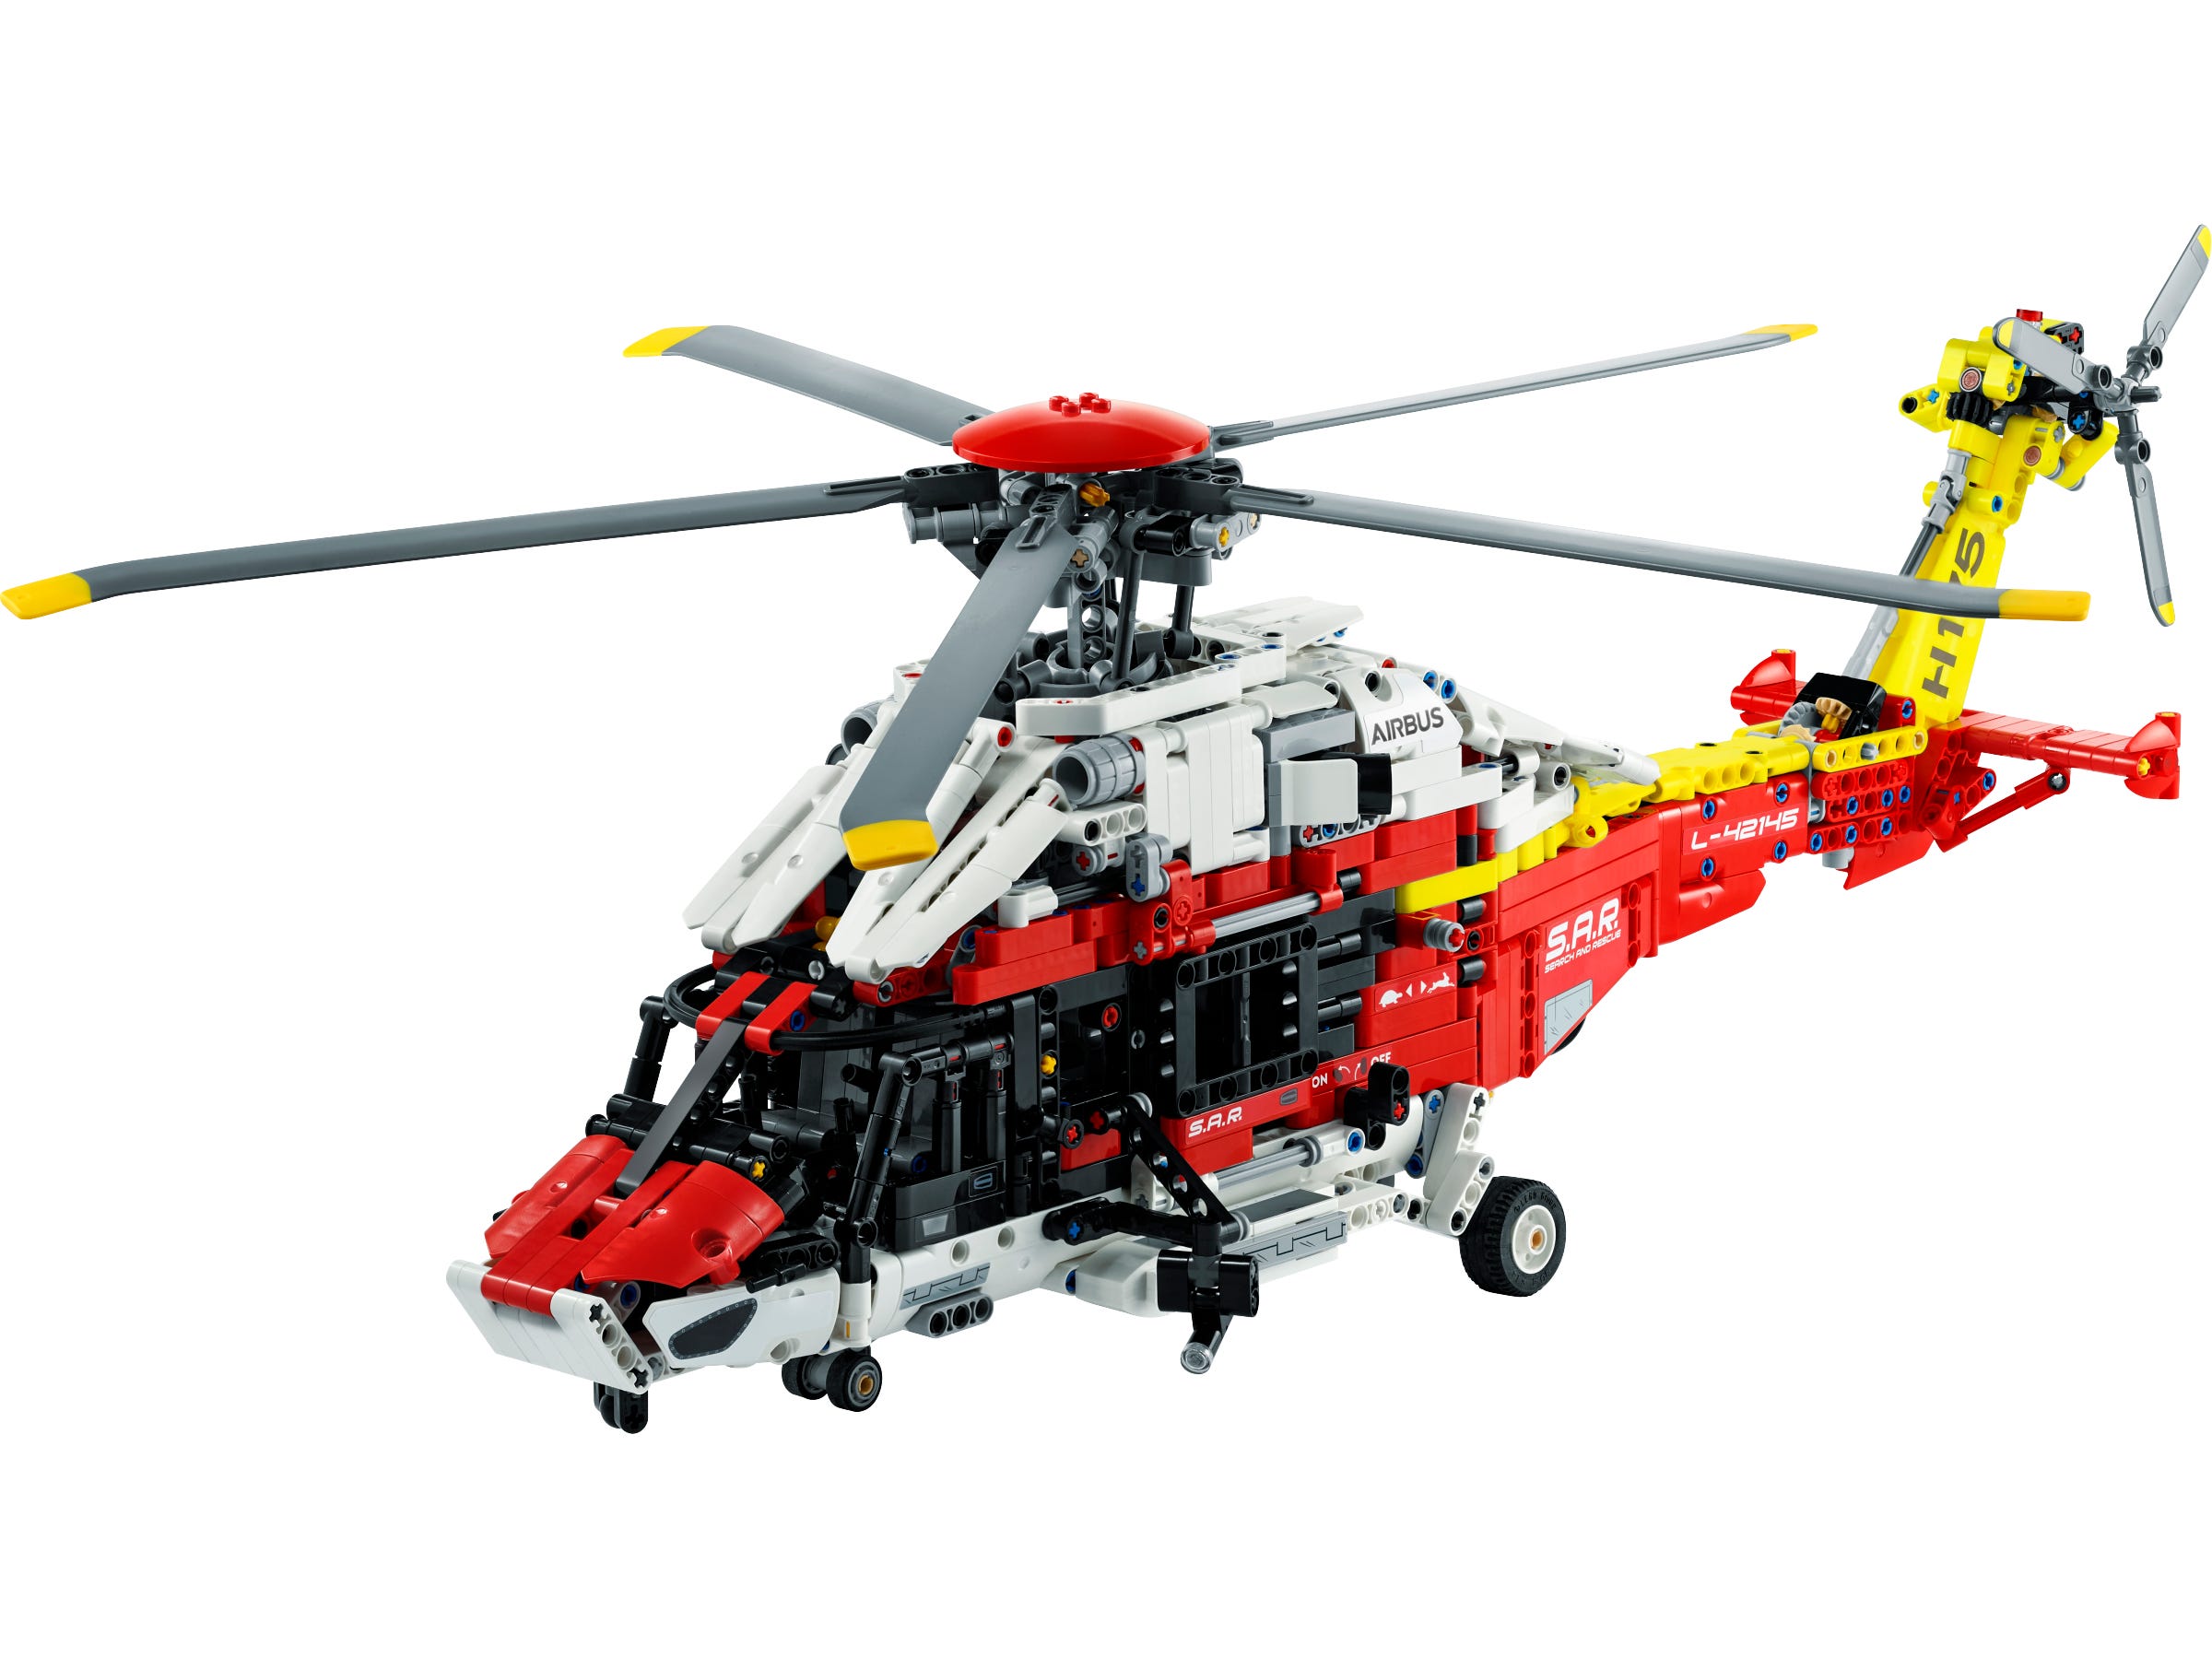 LEGO Helicóptero de Rescate Airbus H175